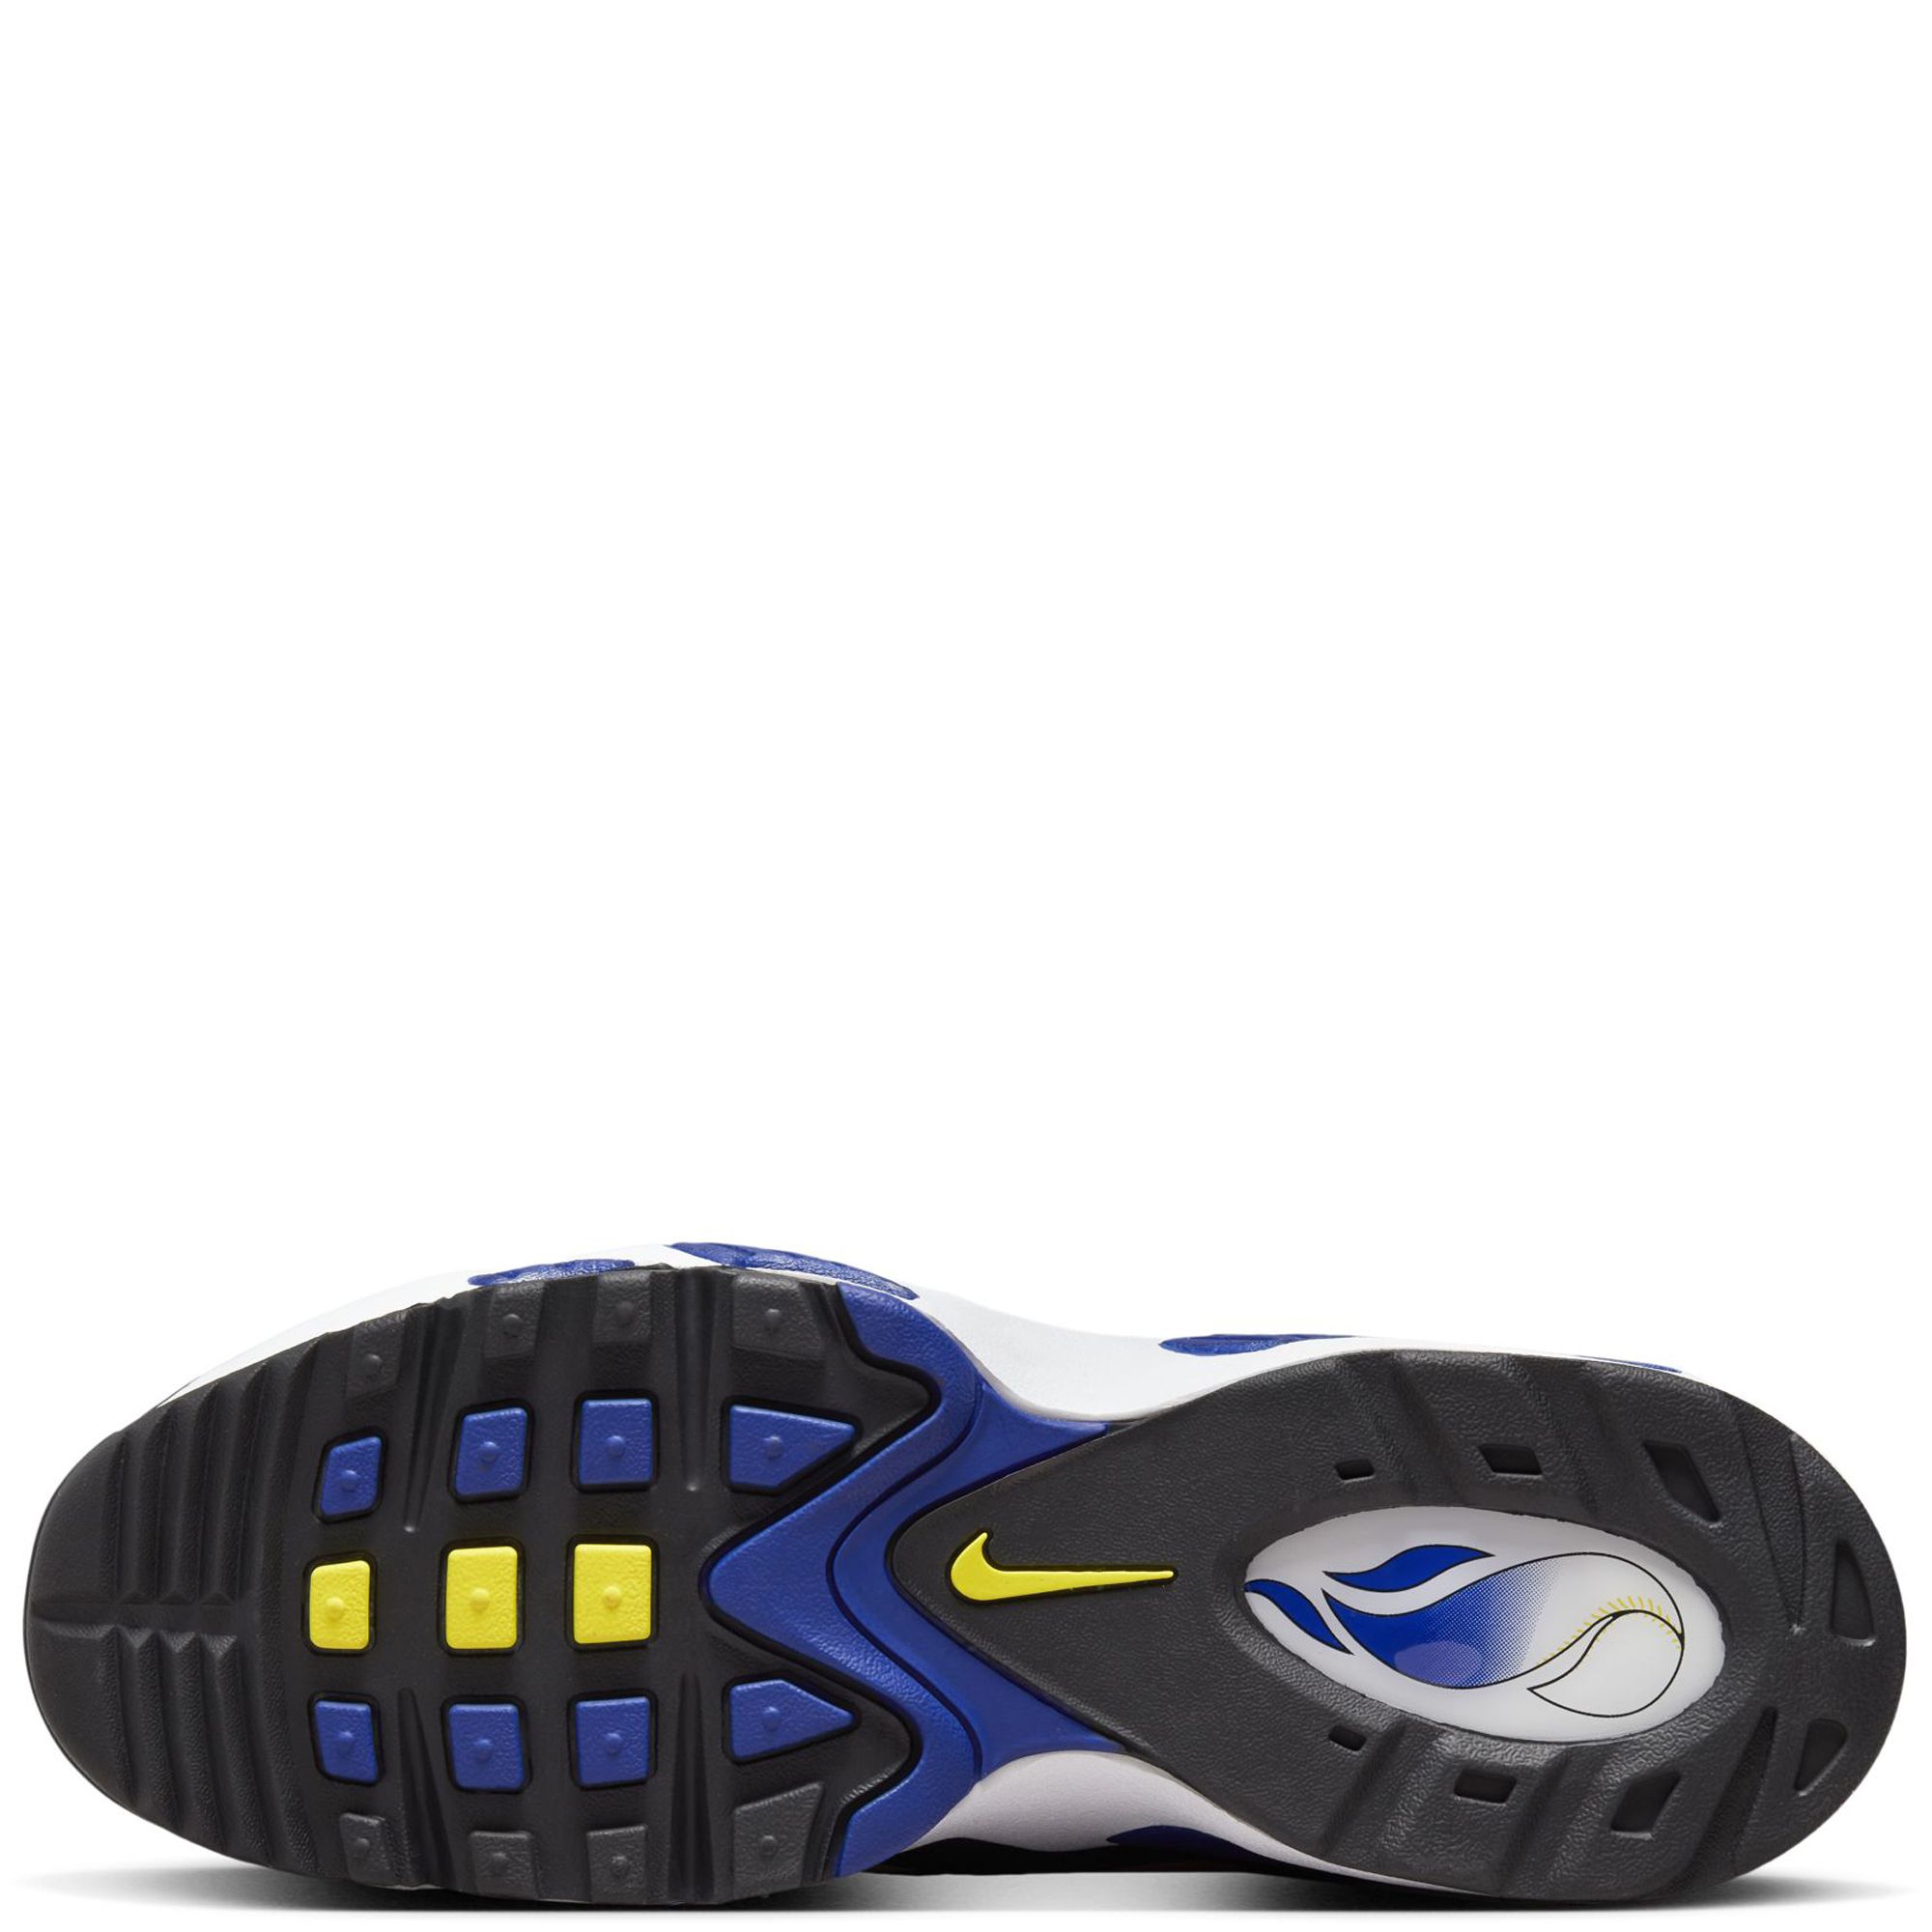 Nike Air Griffey Max 1 (Dark Concord/Hyper Jade) - Sneaker Freaker